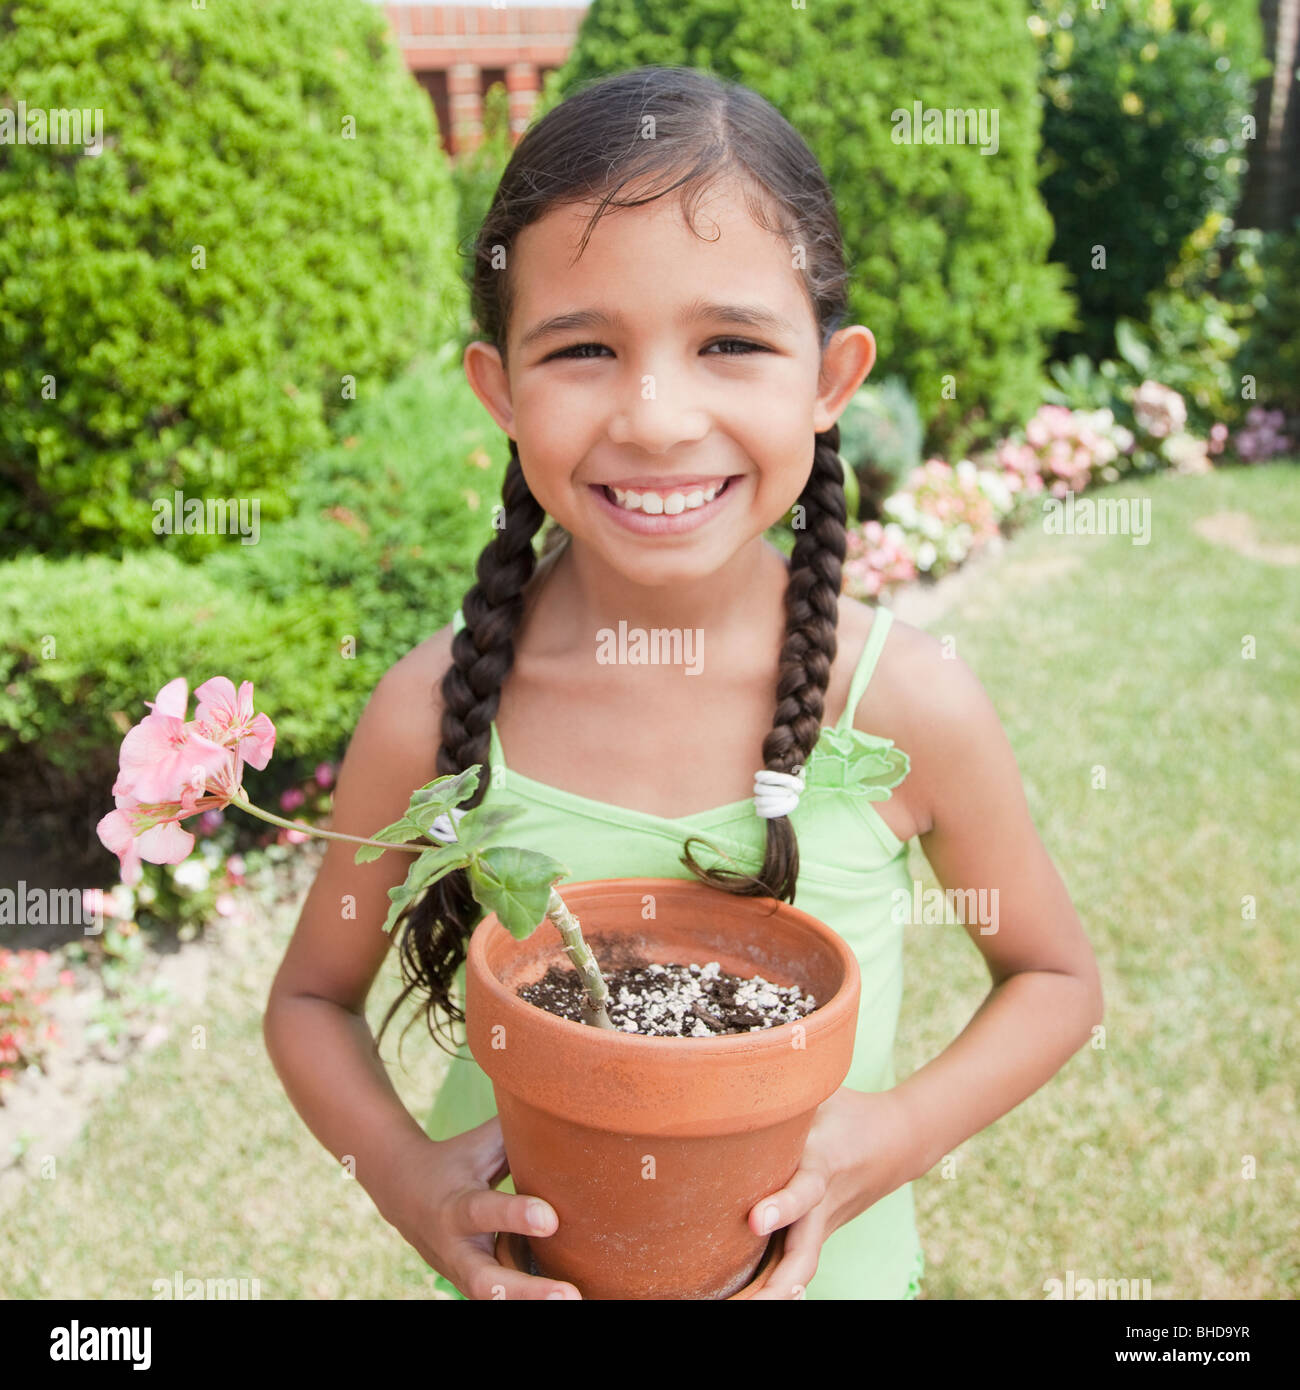 Hispanic girl holding potted plant Stock Photo